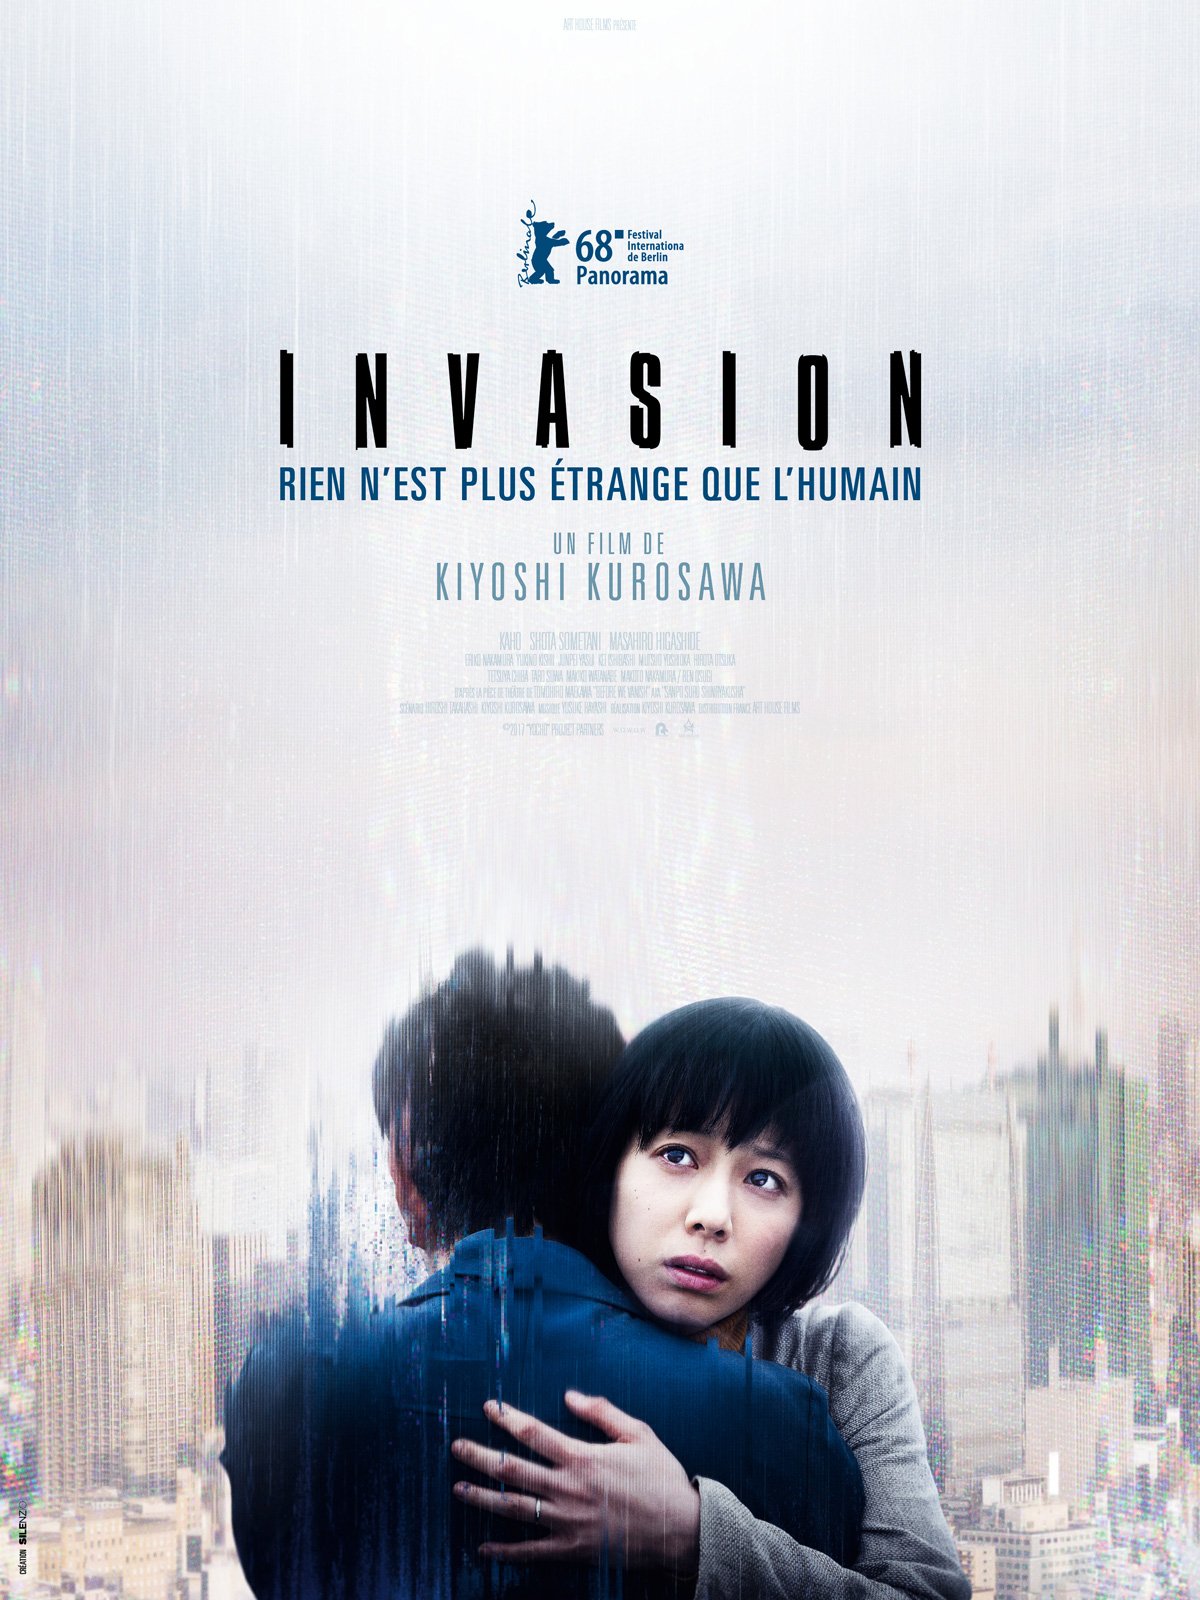 Invasion Film 2017 Allociné 